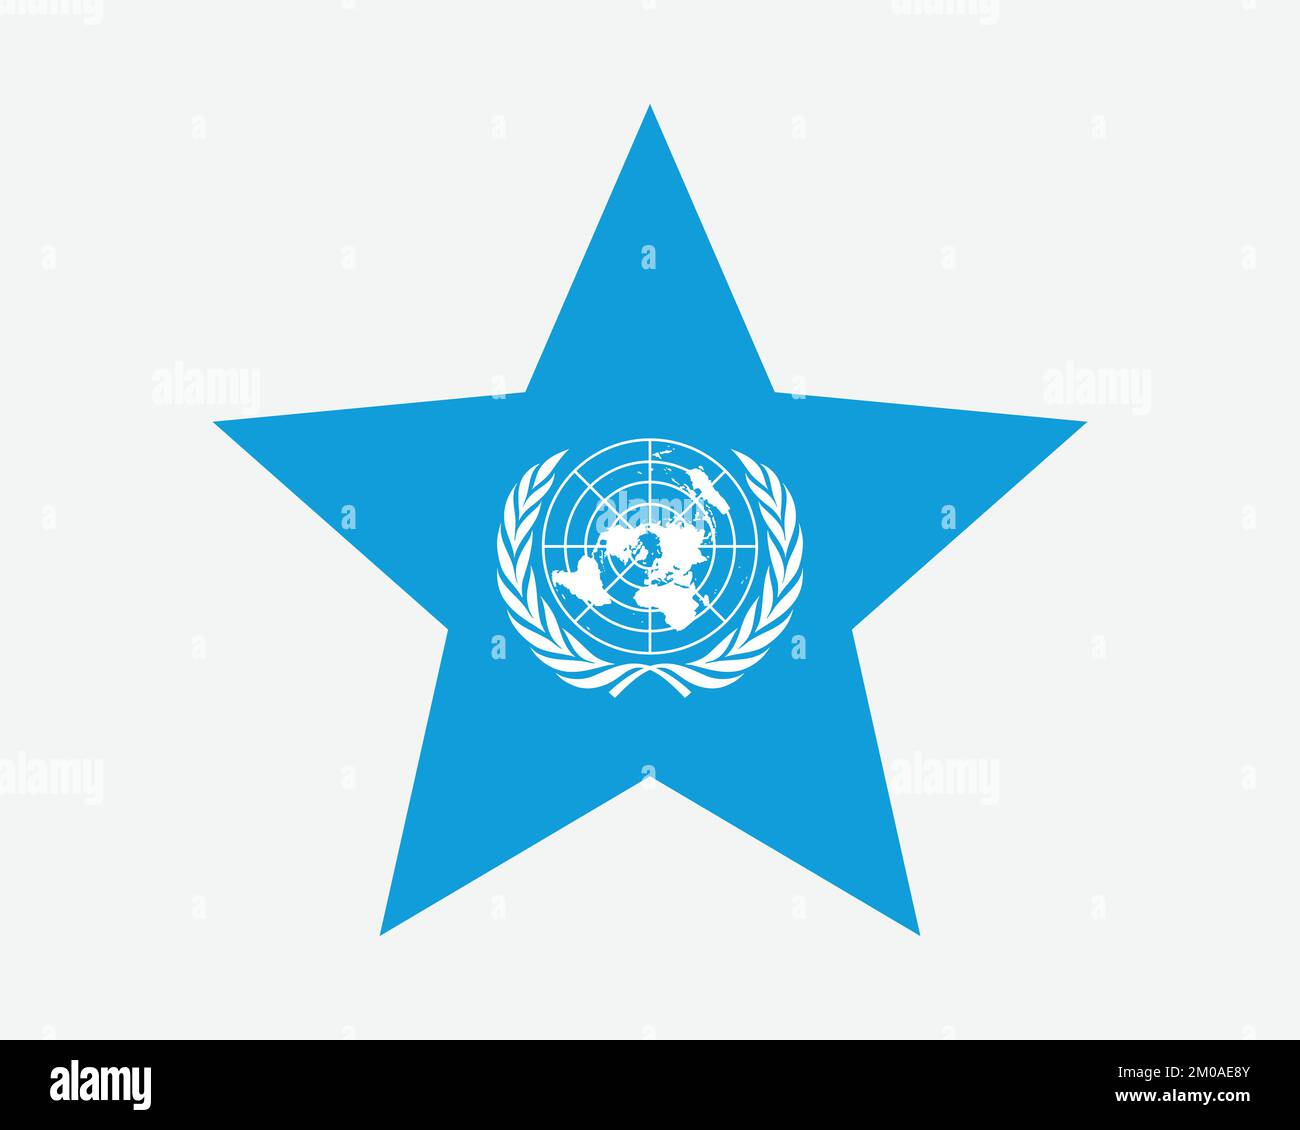 Bandiera di un Star. Star Shape Flag delle Nazioni Unite. Illustrazione grafica dell'icona di banner dell'organizzazione intergovernativa disegno piano vettoriale Illustrazione Vettoriale